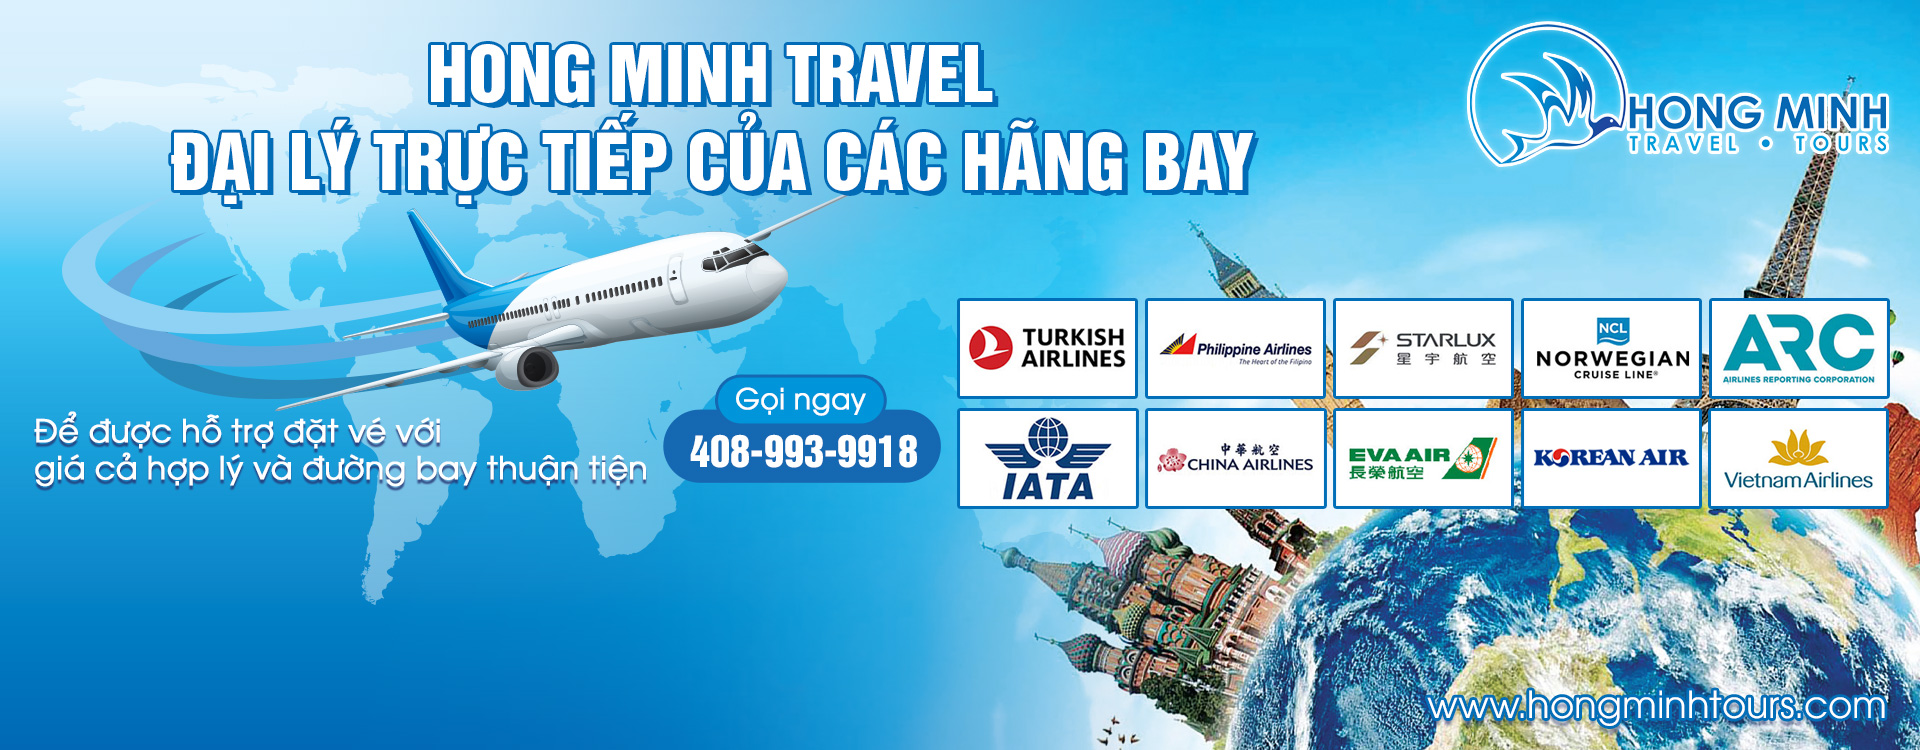 San Jose Travel & Tours – Hong Minh Tours, Inc.